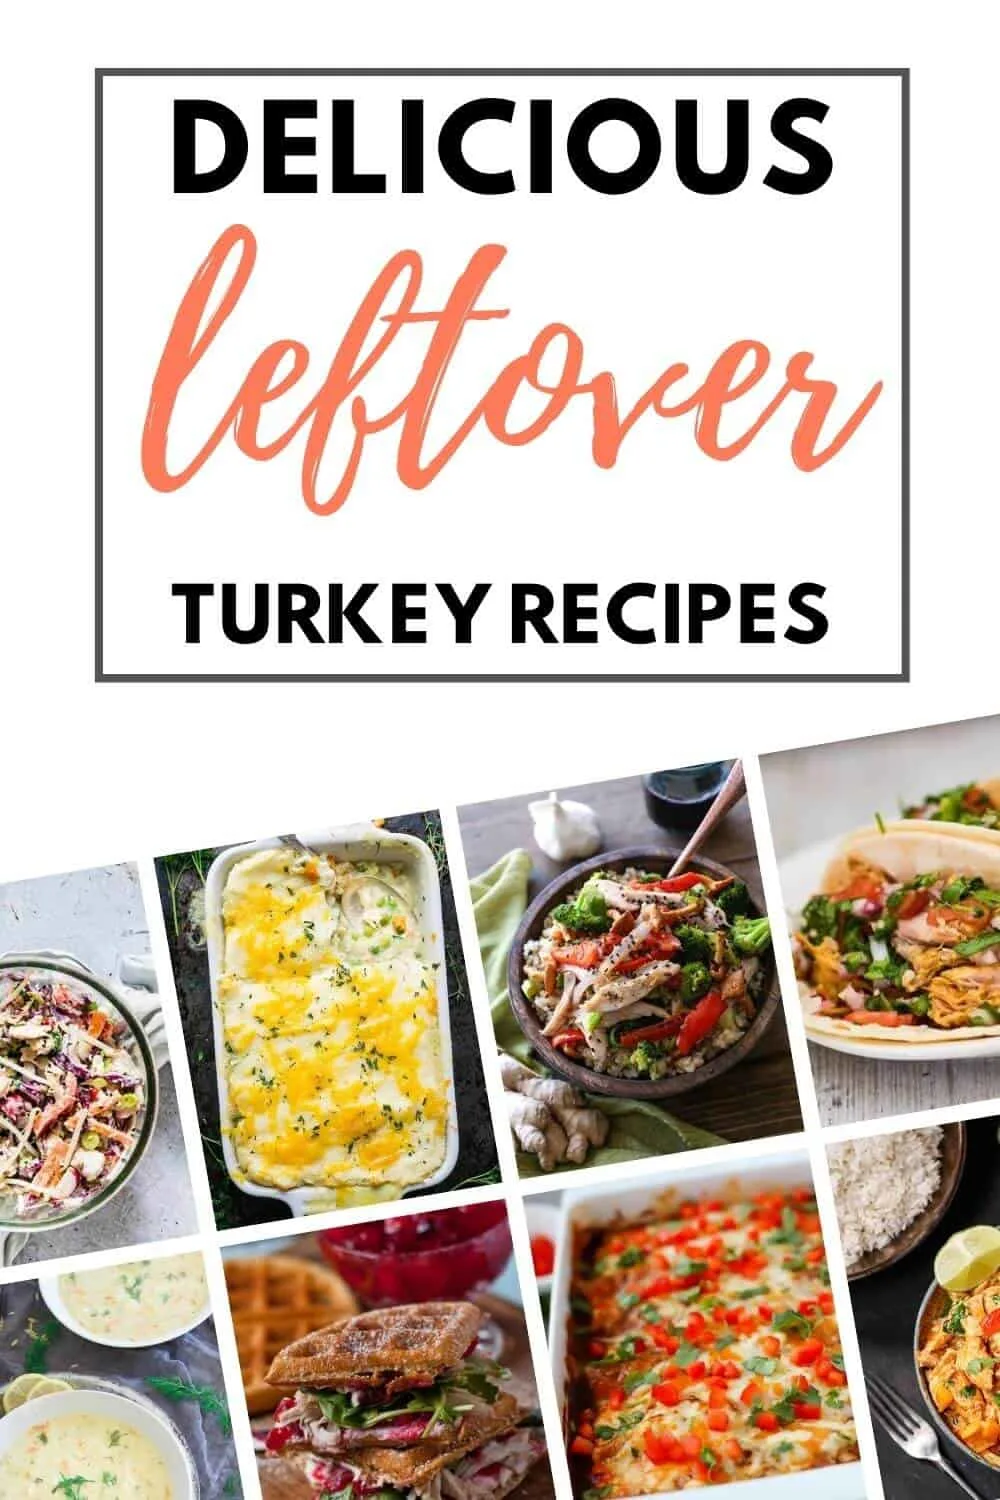 Leftover turkey recipes ideas (2)